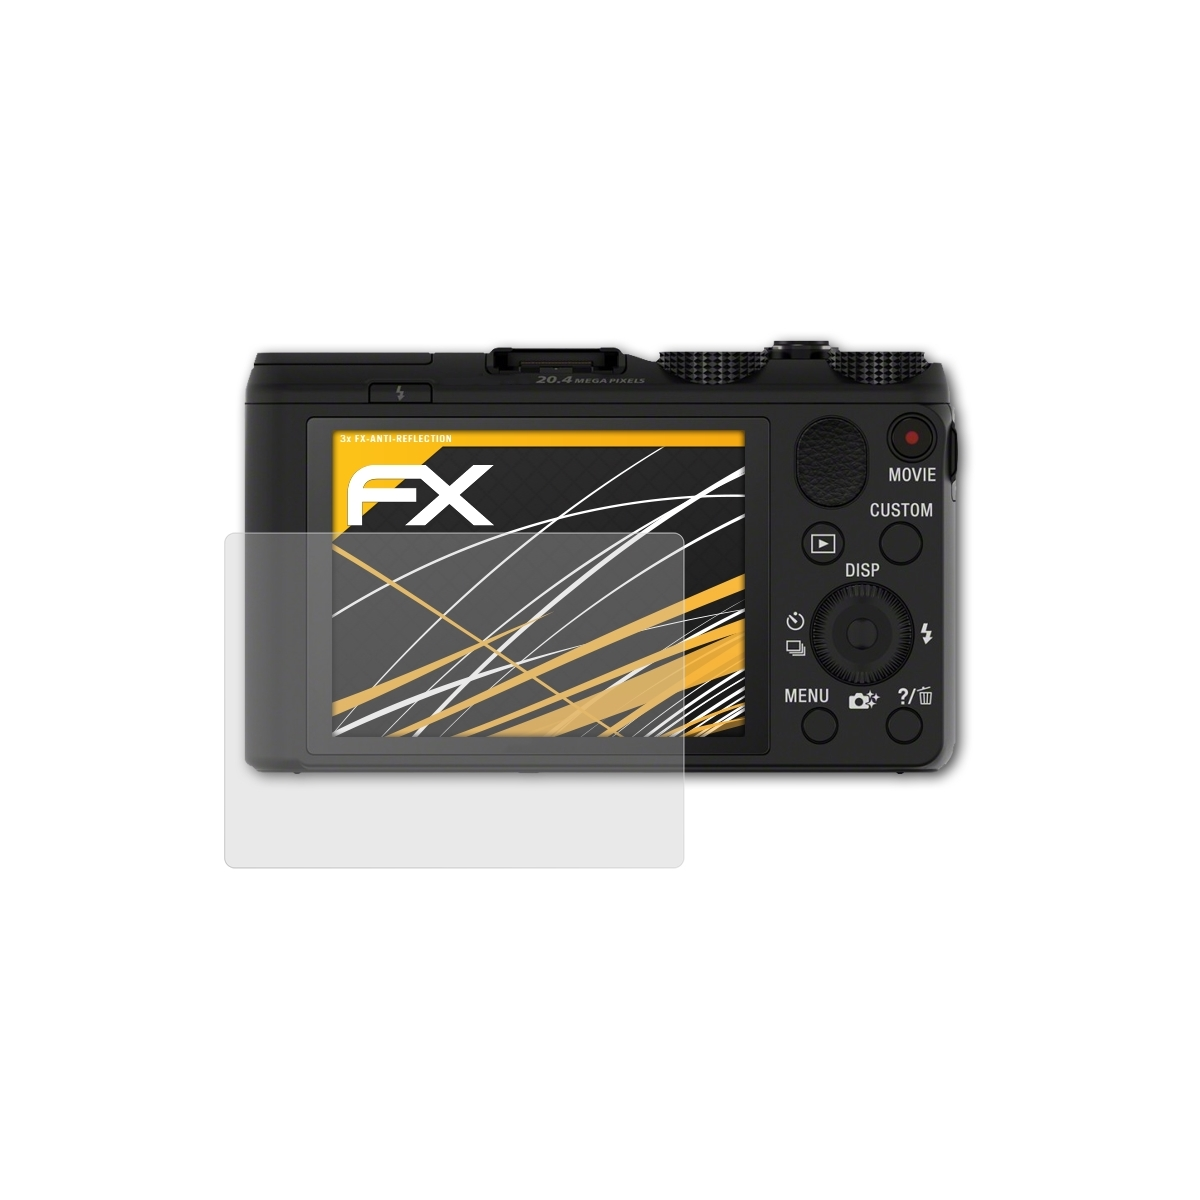 ATFOLIX 3x Sony Displayschutz(für DSC-HX50) FX-Antireflex